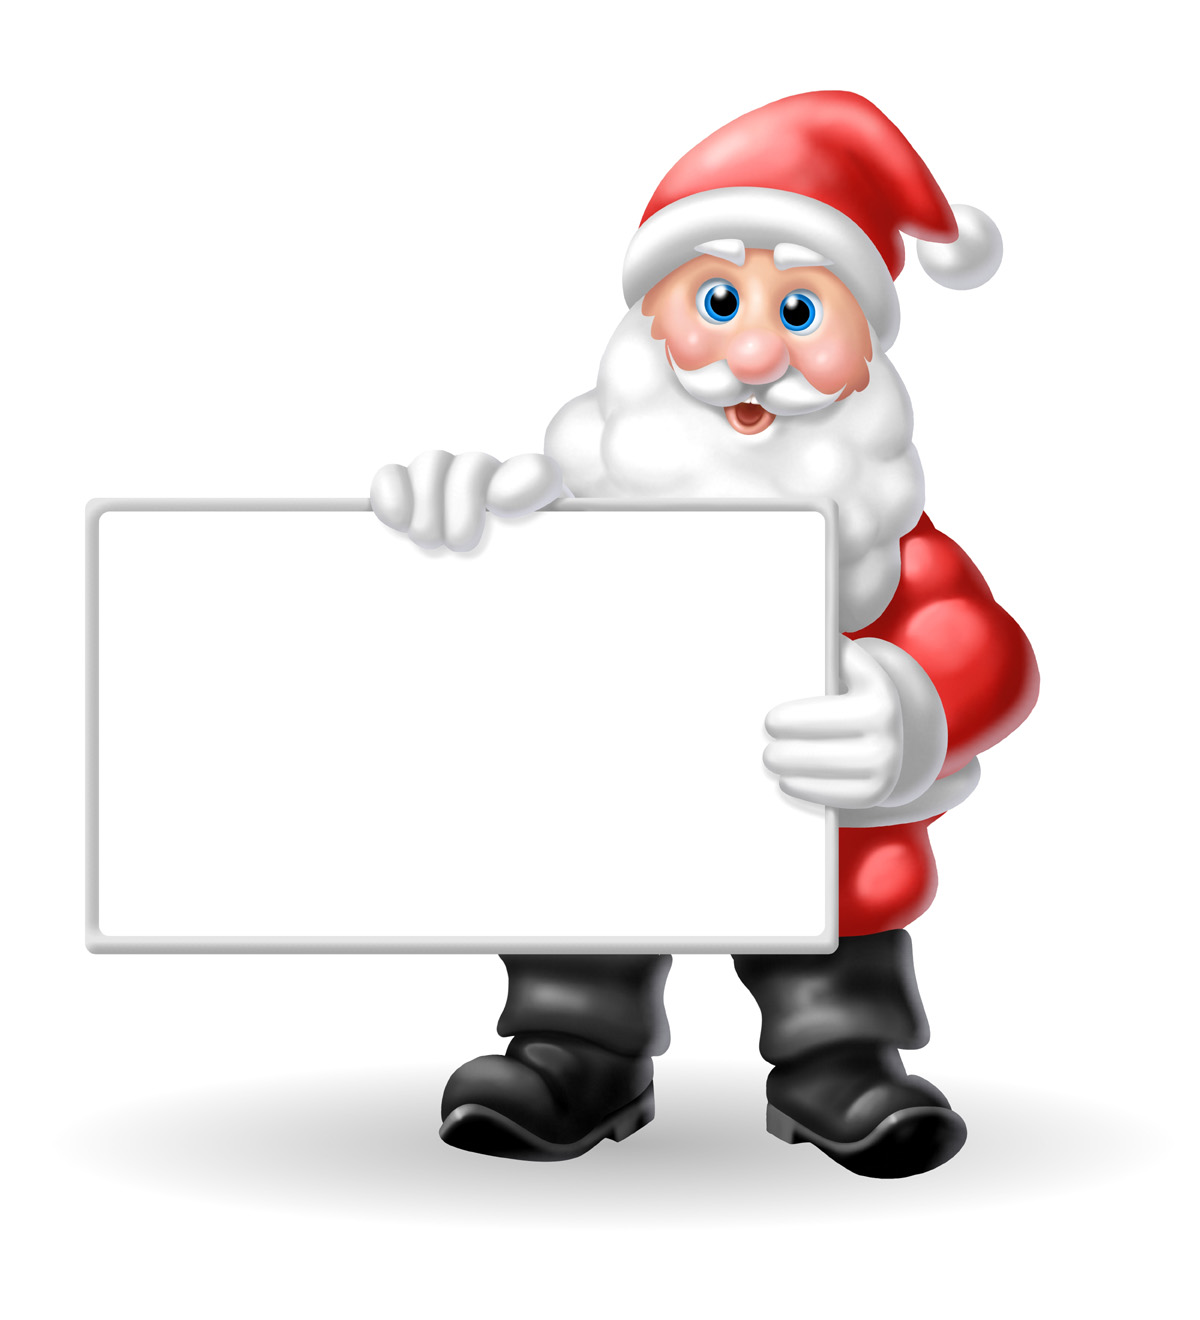 Santa Claus - Santa Claus Image Hd - HD Wallpaper 